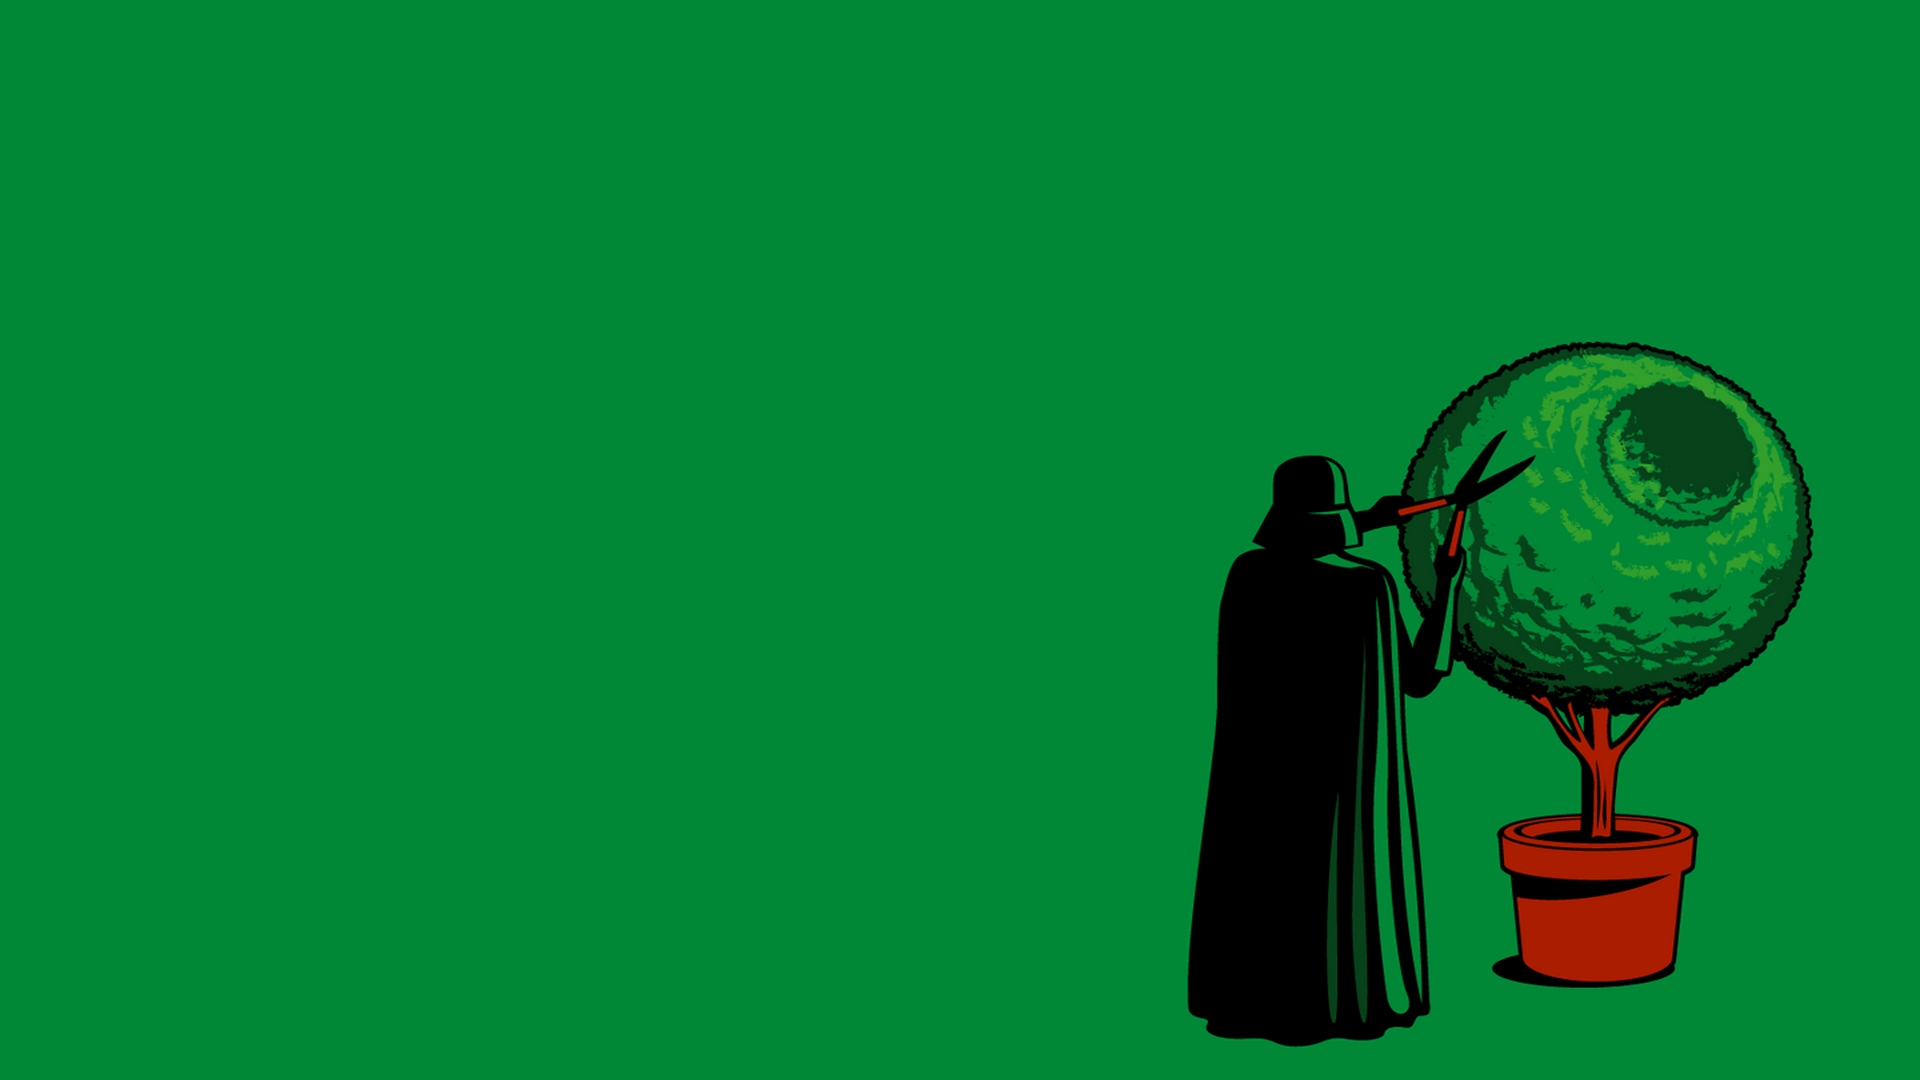 Star Wars Wallpaper Funny Darth Vader